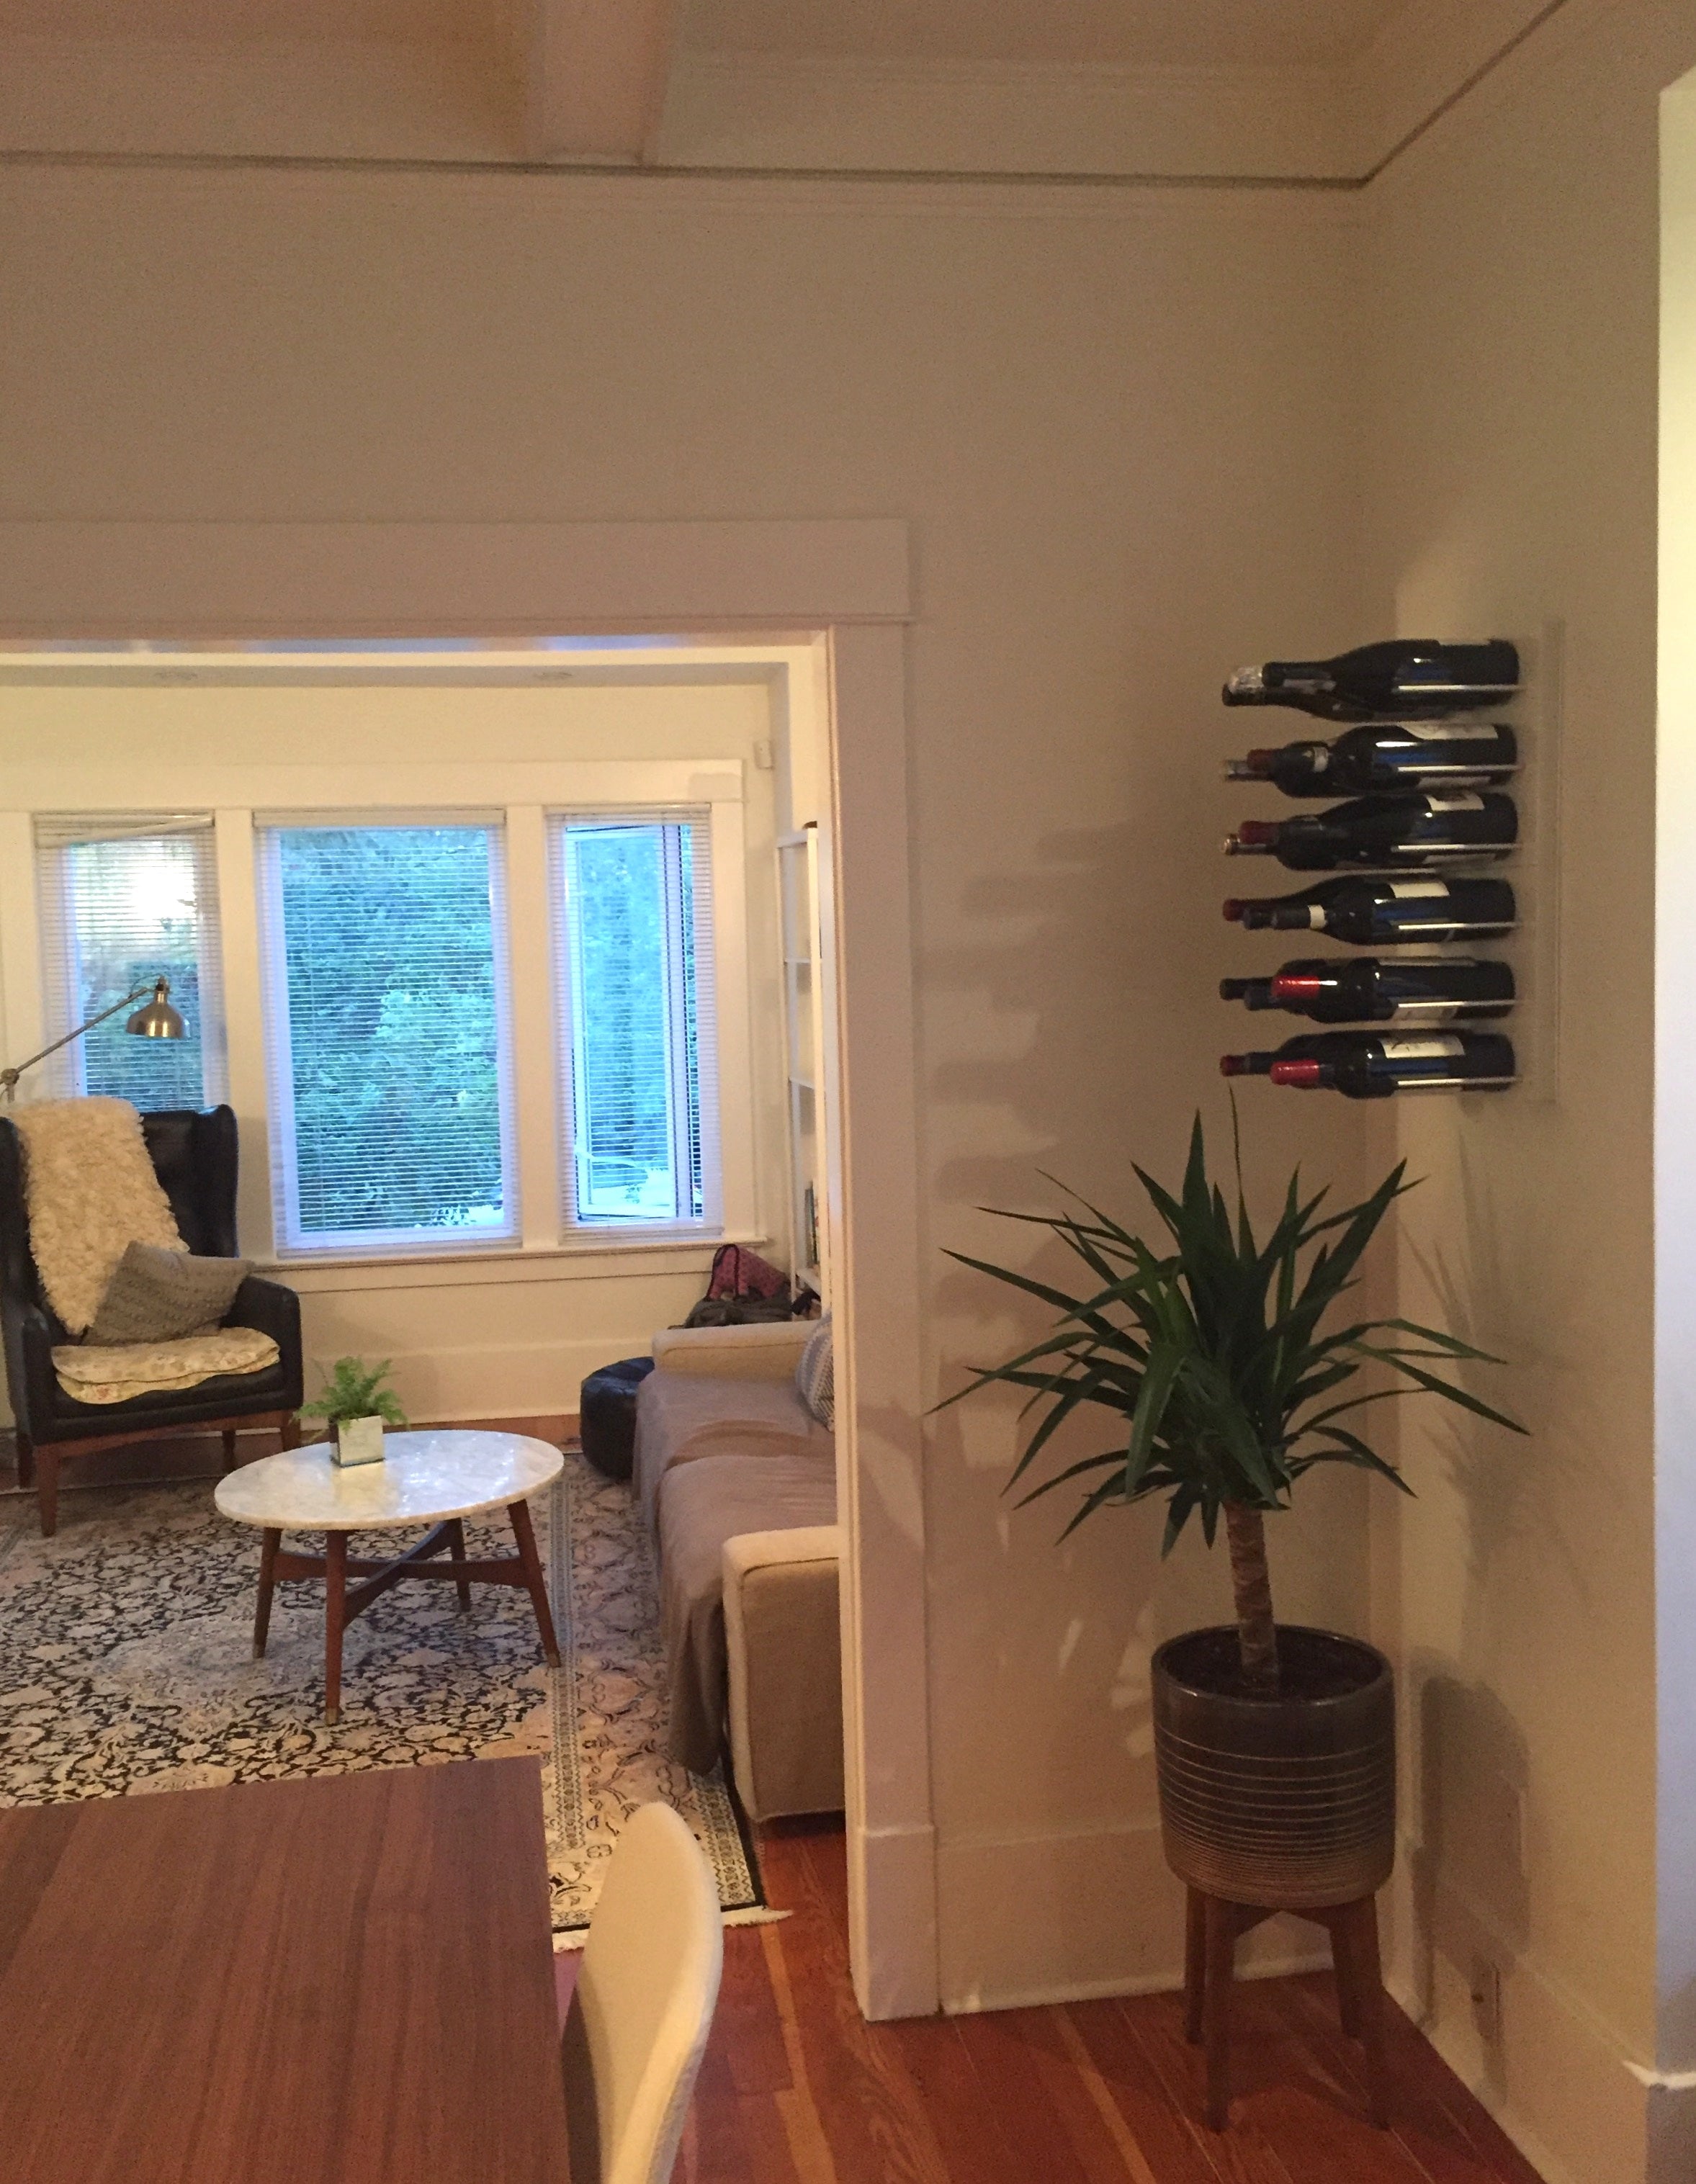 danish modern interior design - STACT wine racks